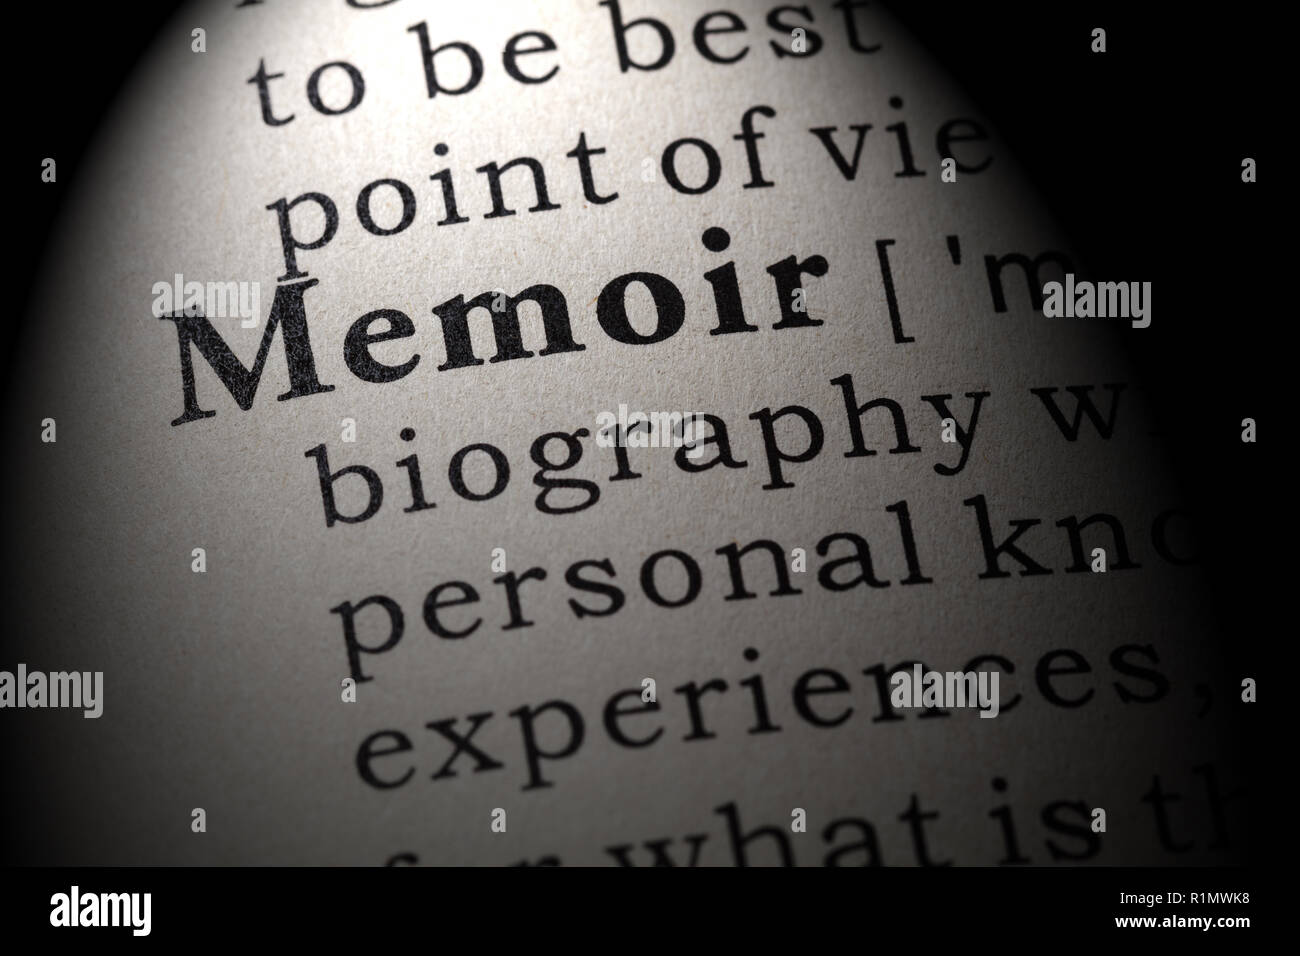 Faux dictionnaire, dictionnaire définition du mot memoir . y compris les principaux termes descriptifs. Banque D'Images